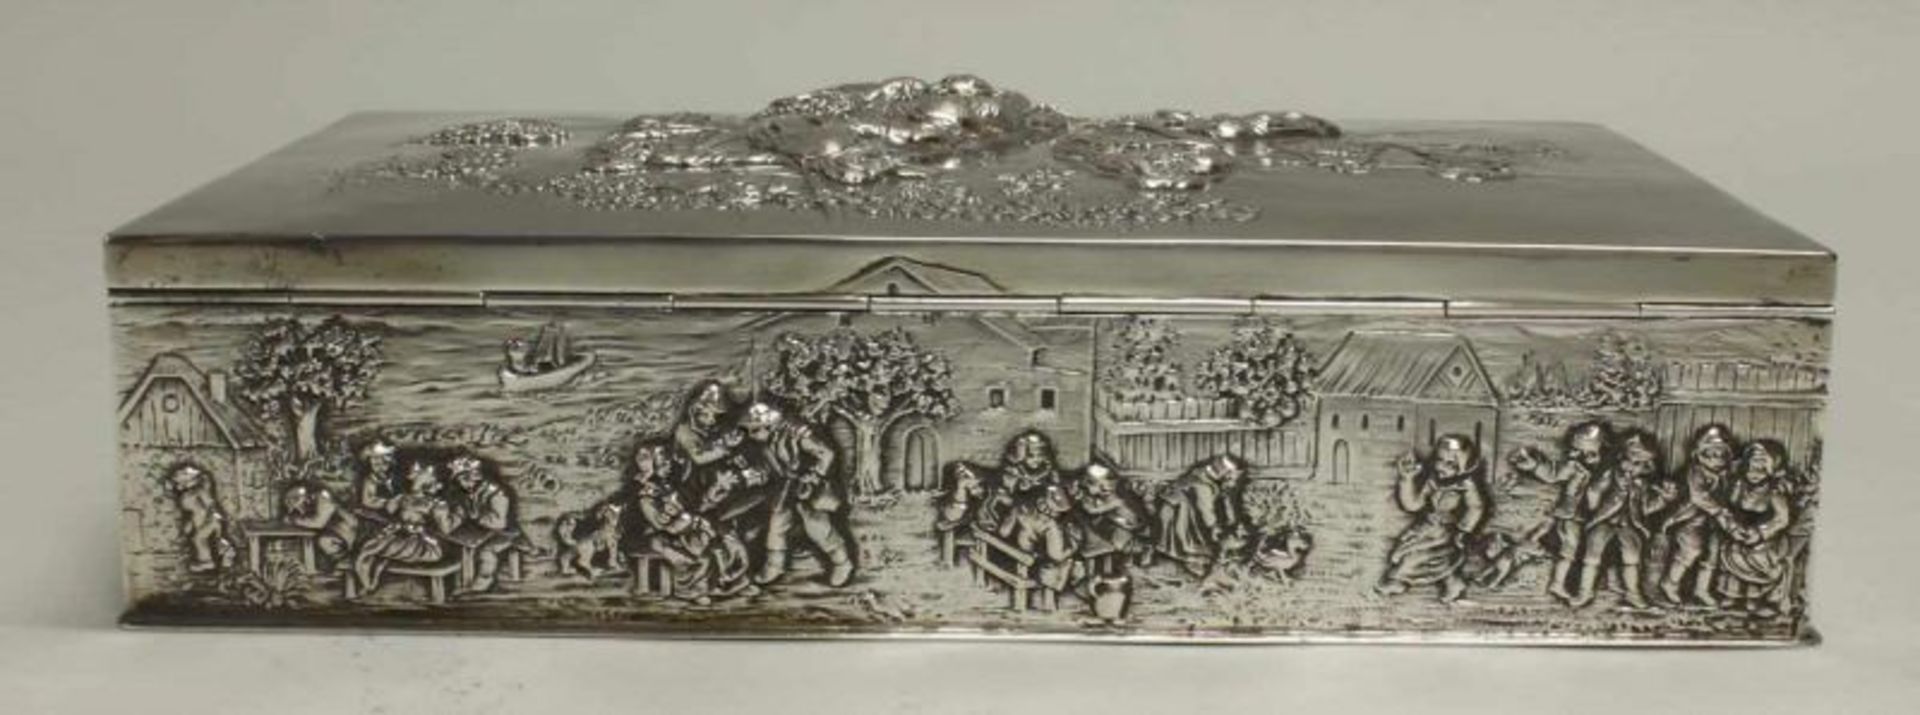 Gebäckdose, Silber 800, deutsch, figuraler Reliefdekor, innen vergoldet, 6 x 26 x 15 cm, ca. 1.375 g - Image 4 of 7